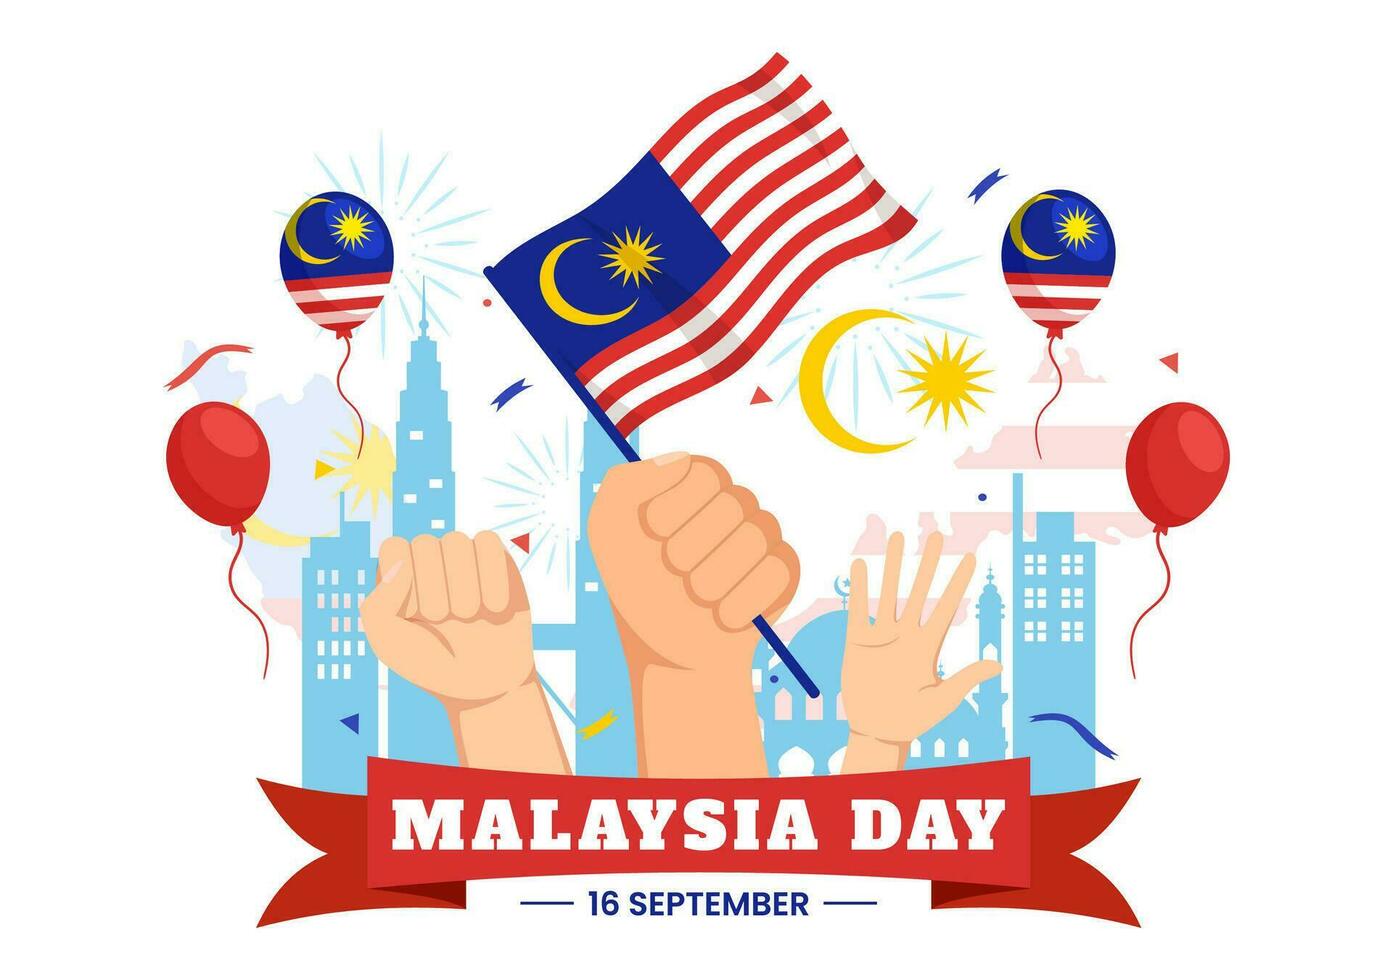 contento Malasia día celebracion vector ilustración en dieciséis septiembre con ondulación bandera y gemelo torres en plano dibujos animados mano dibujado plantillas